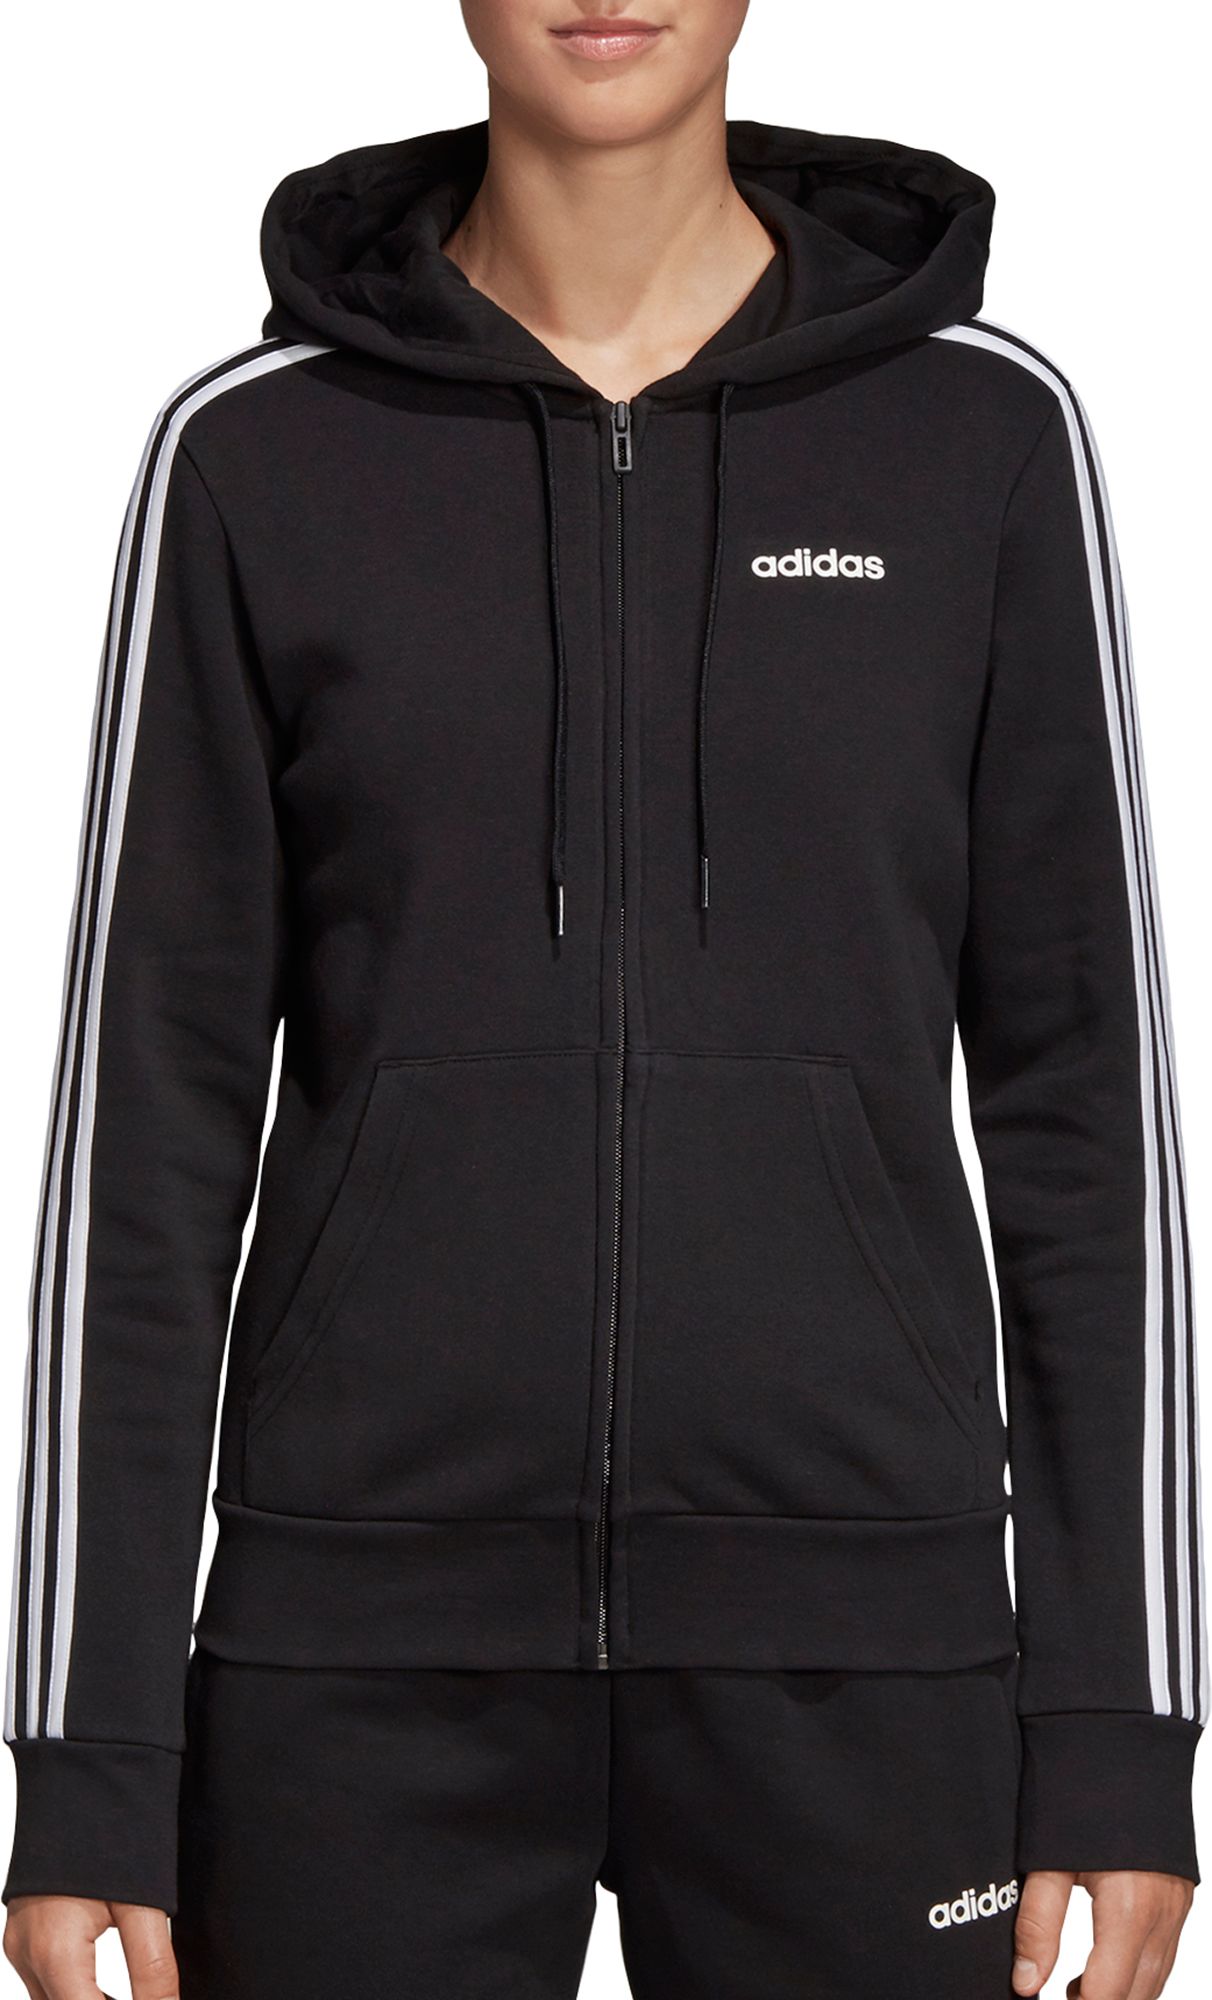 adidas black zip up jacket women's